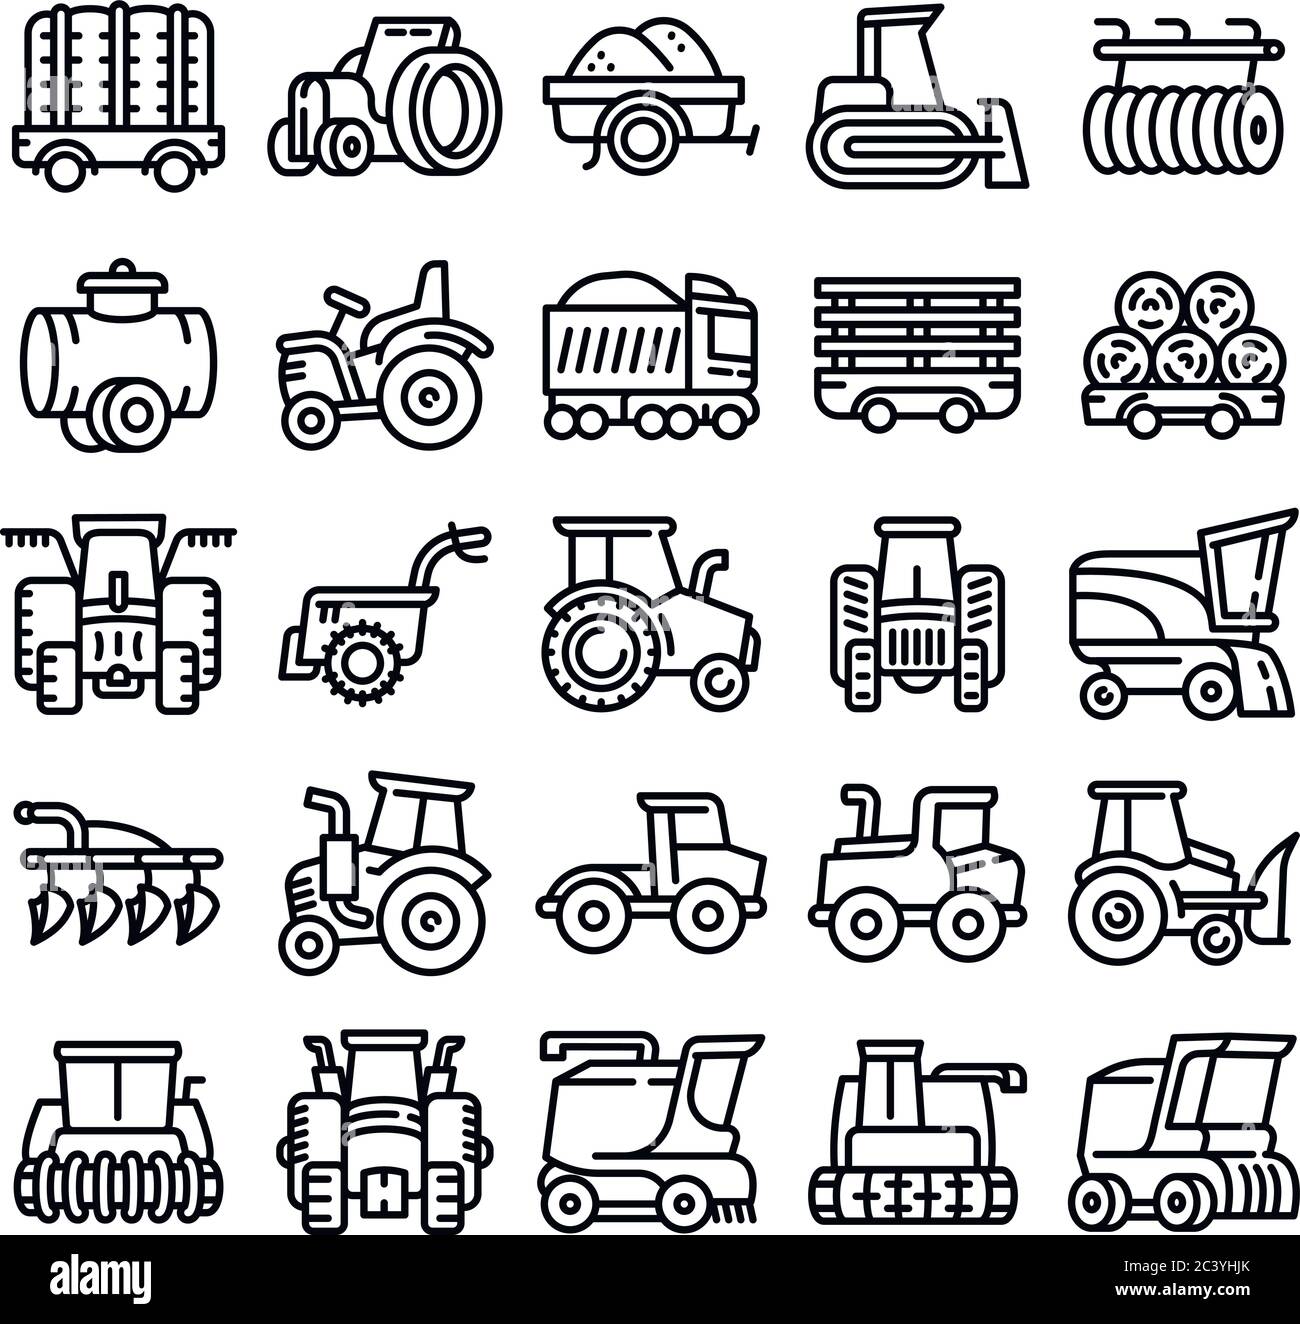 Landwirtschaftliche Geräte Symbole gesetzt. Gliederung der landwirtschaftlichen Ausrüstungen Vector Icons für Web Design auf weißem Hintergrund Stock Vektor